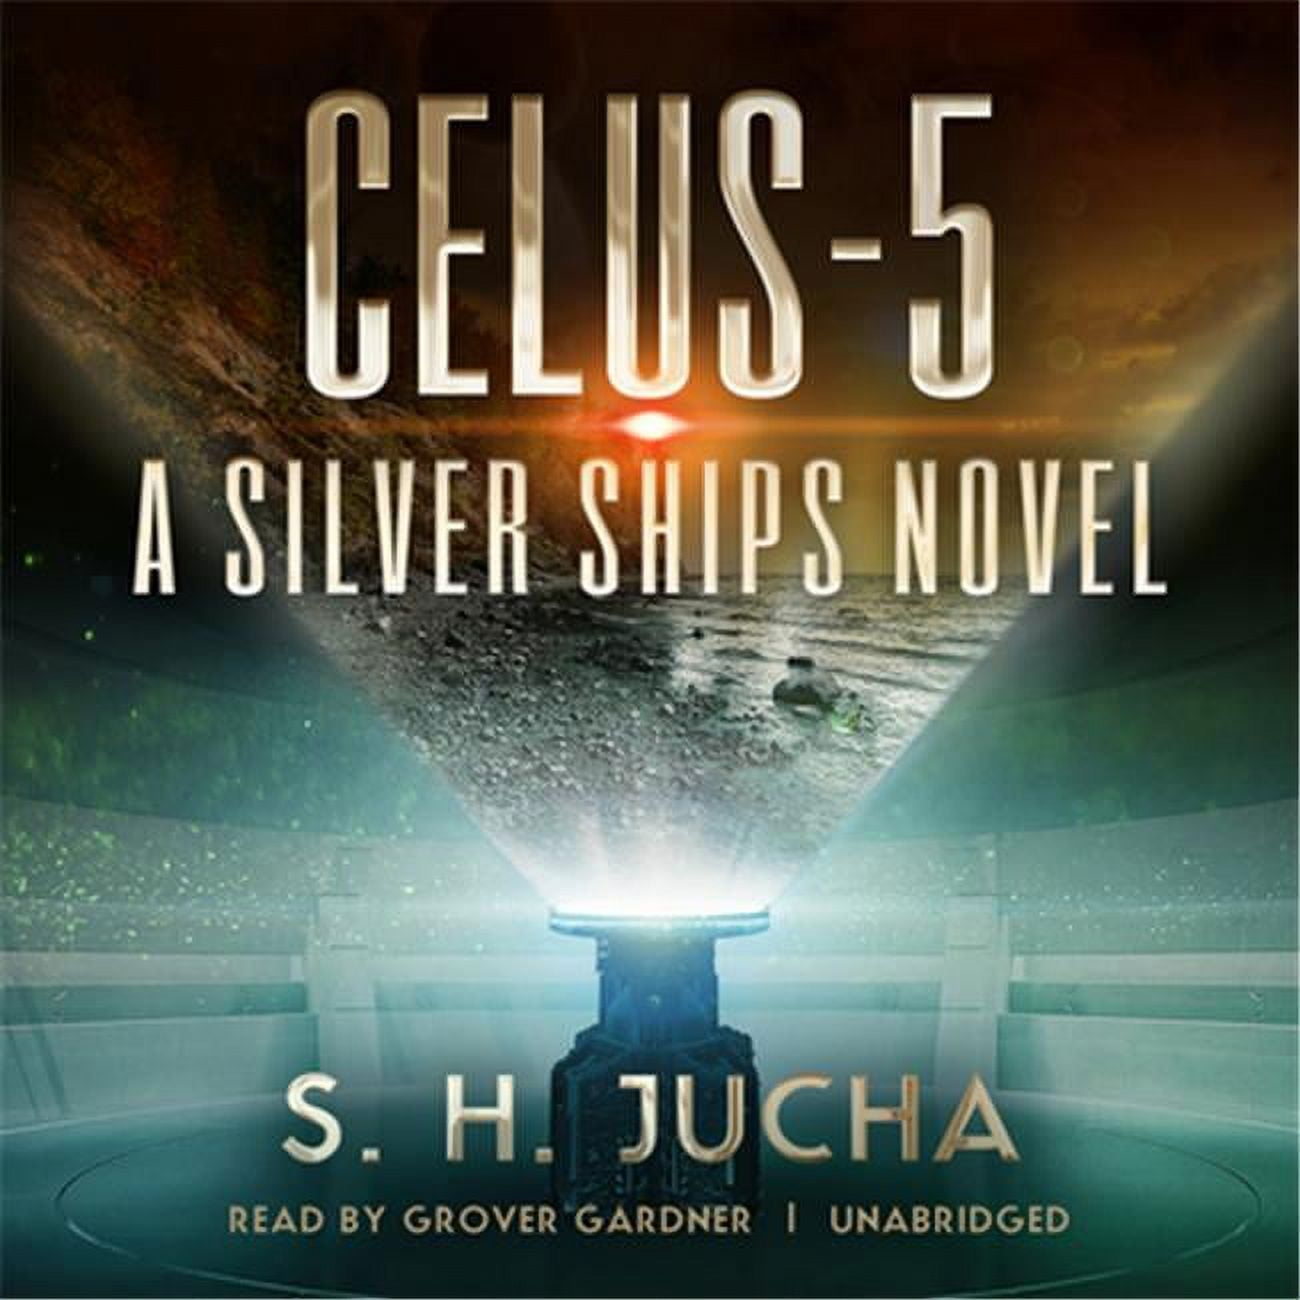 9781538428153 Celus-5 A Silver Ships Novel - Audio Book